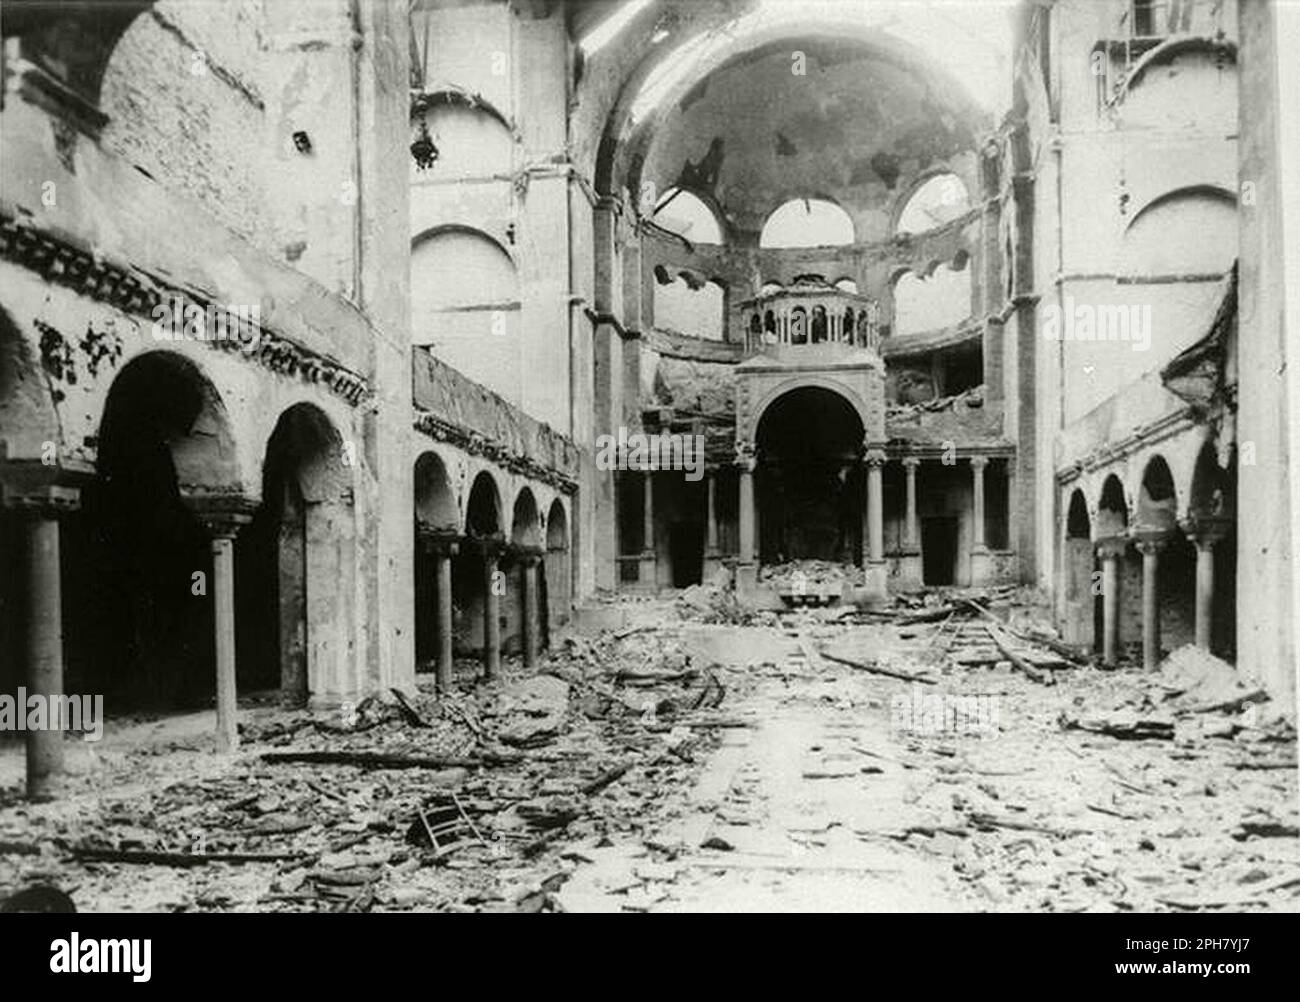 Vue intérieure de la synagogue Fasanenstrasse détruite, Berlin, brûlée sur Kristallnacht. Kristallnacht était un pogrom national organisé et réalisé par le Parti nazi le 9th novembre 1938. Des boutiques et des synagogues ont été détruites et des personnes ont été humiliées et battues pendant que la police regardait, ou même aidées. Bien que la quantité de dégâts et le nombre de personnes attaquées aient été assez faibles, le fait qu'il n'était pas complètement opposé a montré aux Nazis qu'ils pouvaient vraiment commencer sur les Juifs et, en tant que tel, est l'un des jalons majeurs sur le chemin de l'Holocauste. Banque D'Images